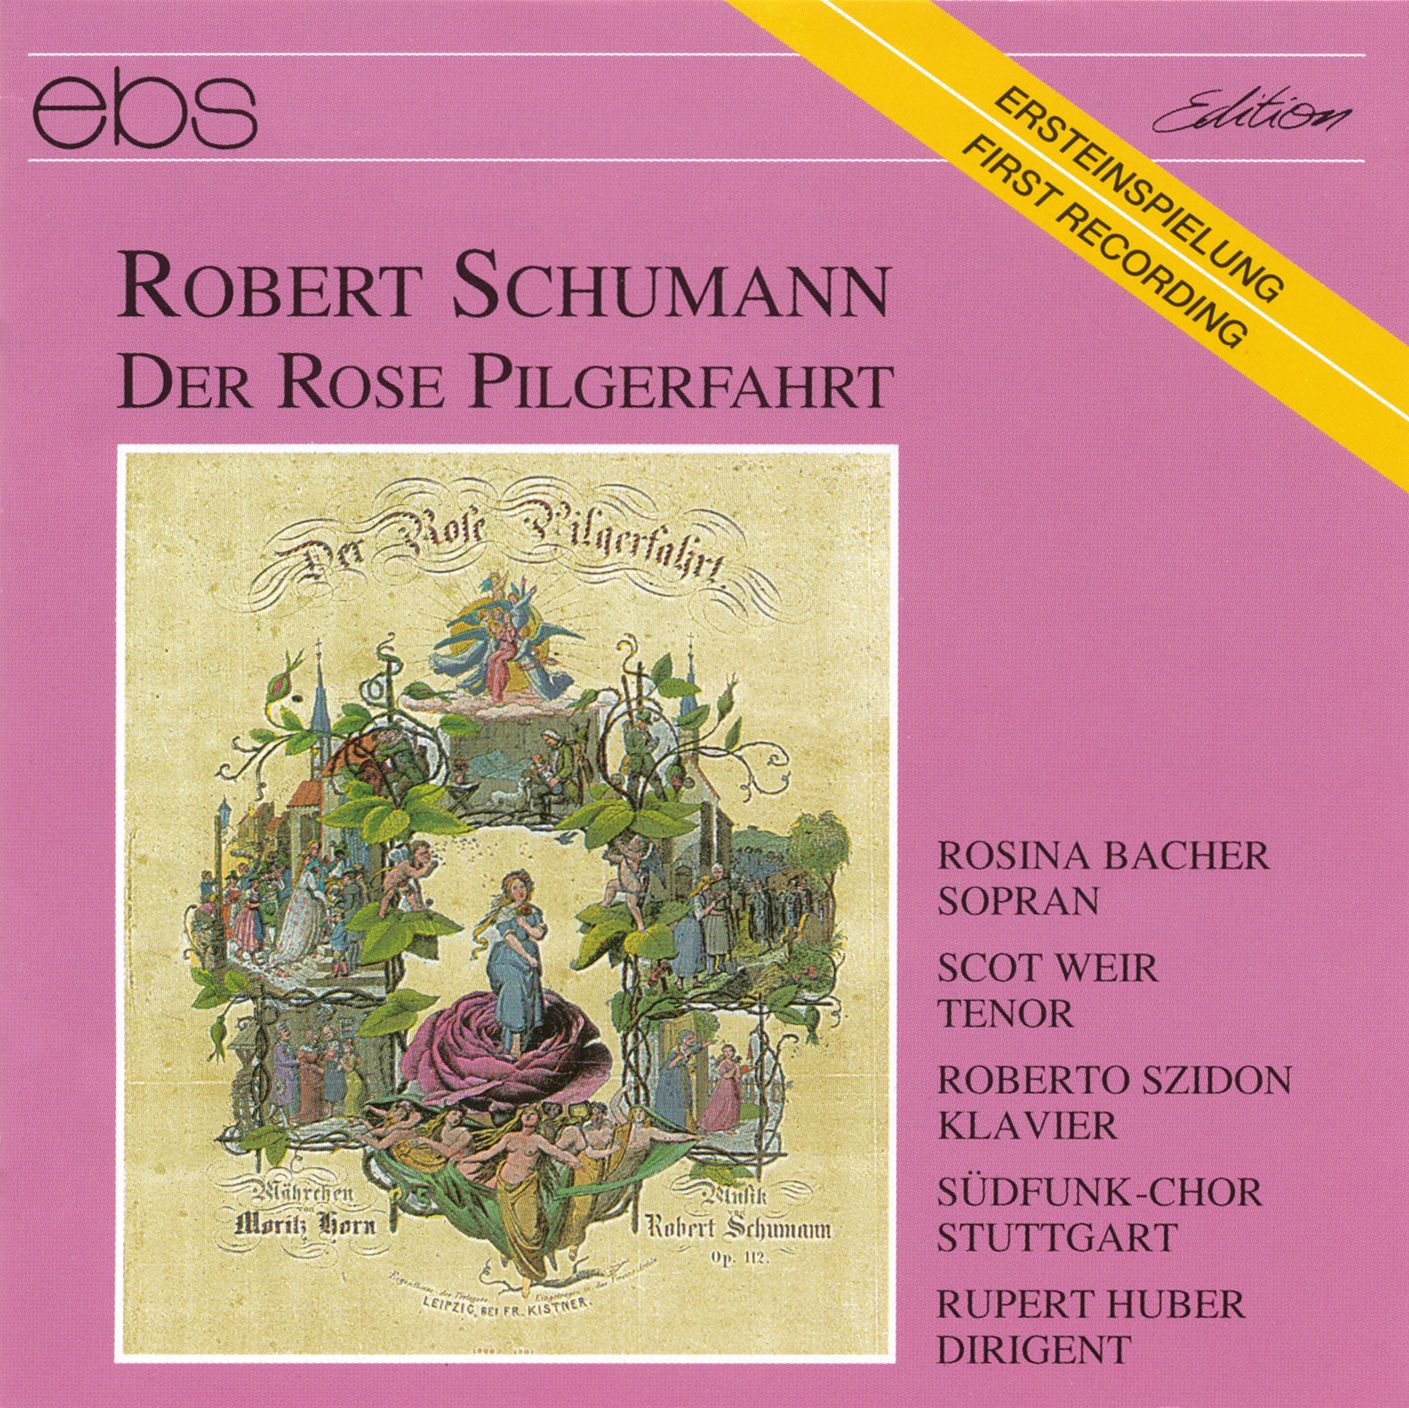 Robert Schumann - Der Rose Pilgerfahrt